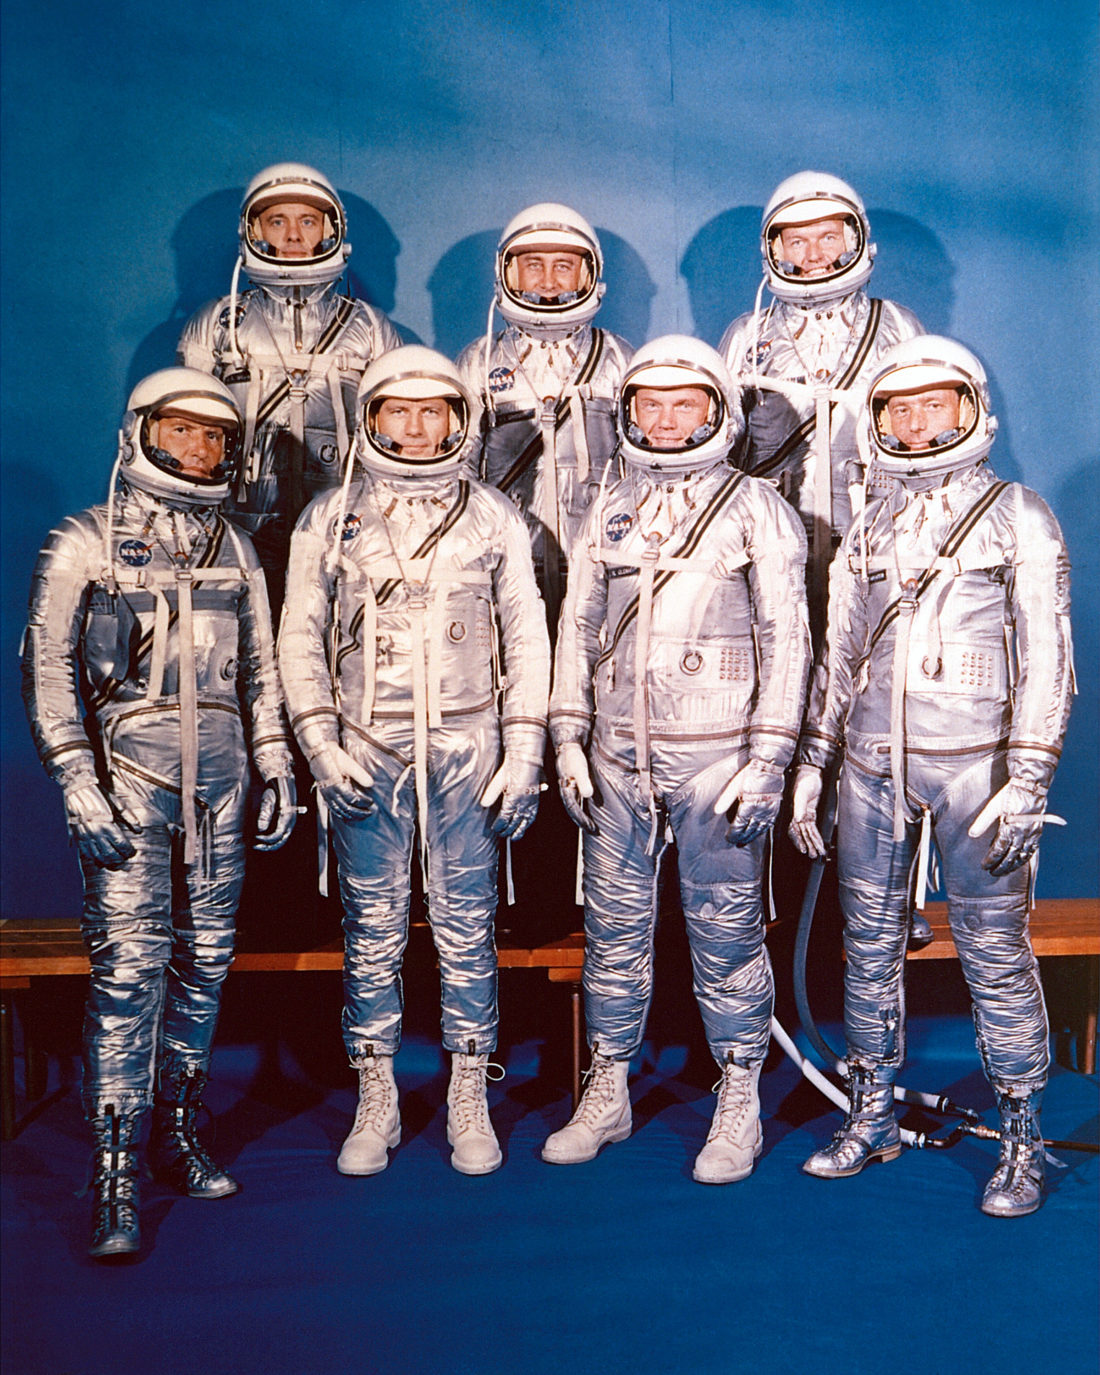 Grupa siedmiu astronautów w skafandrach kosmicznych